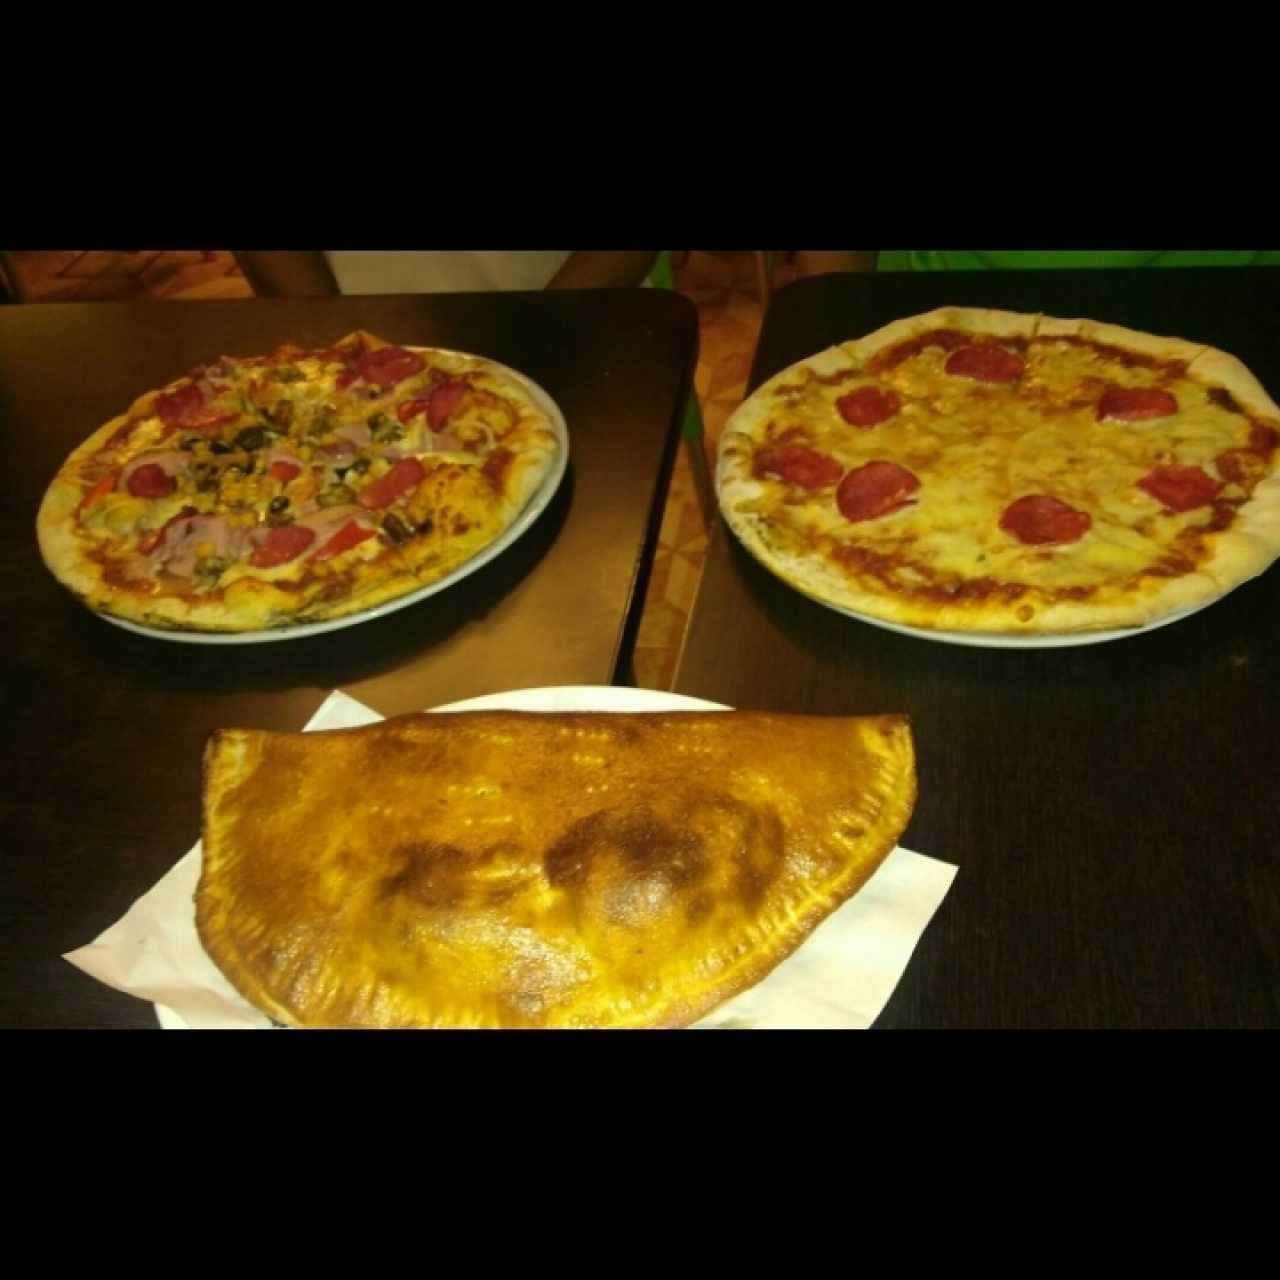 Pizza Kprichos, Pizza de peperoni y Calzone